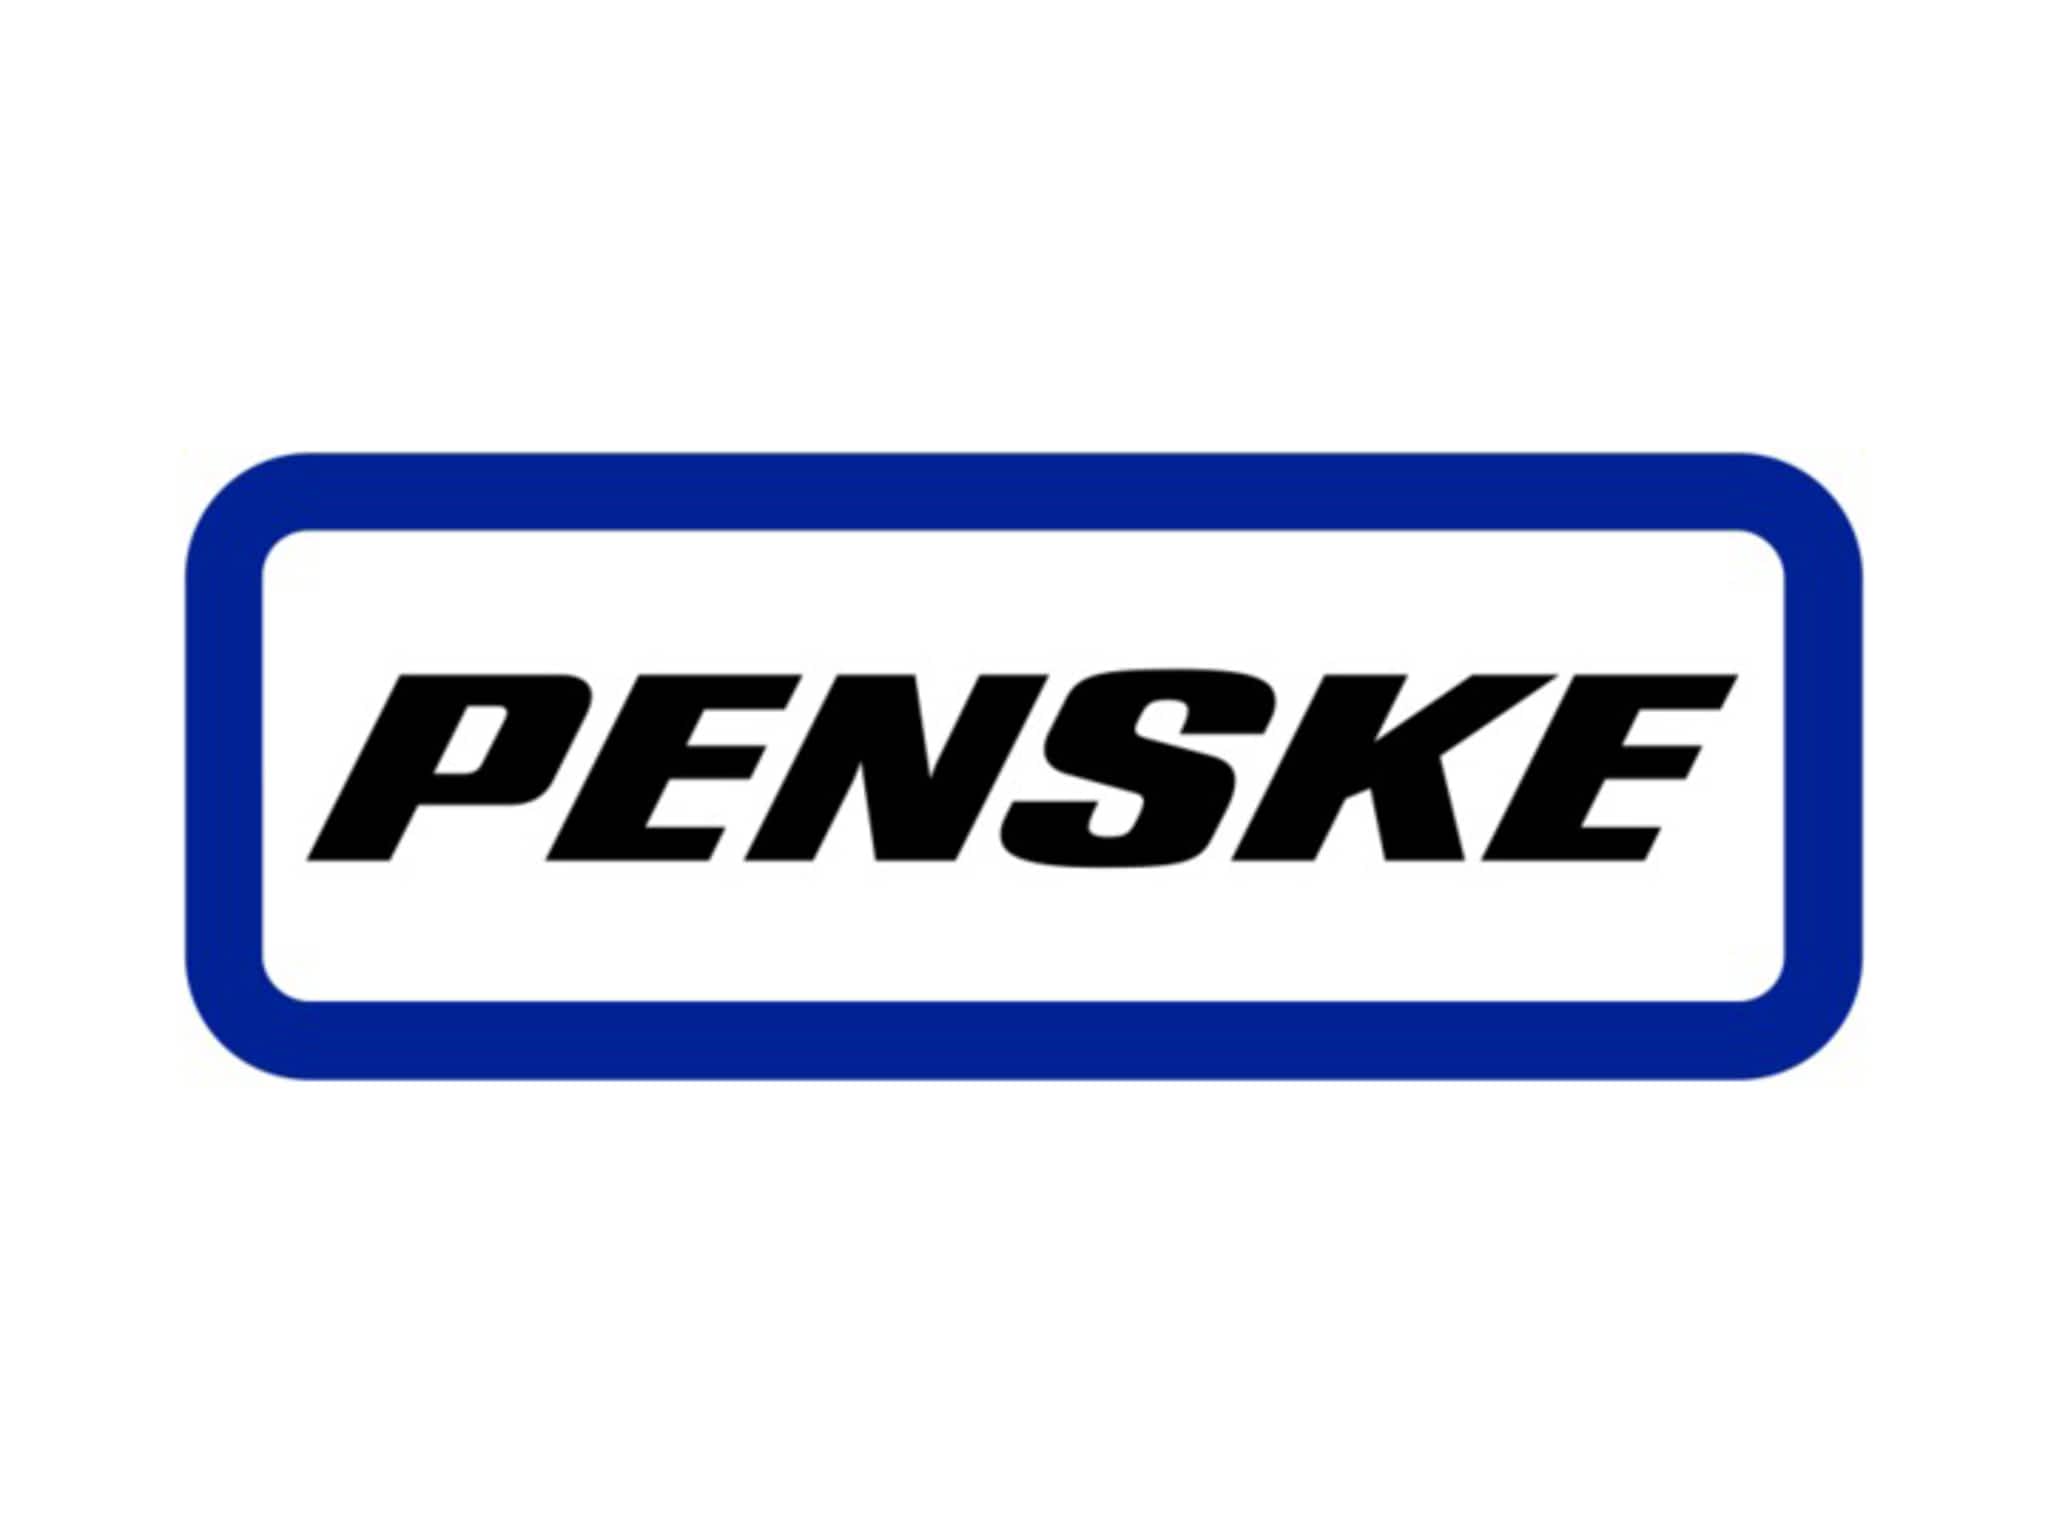 photo Penske Truck Rental